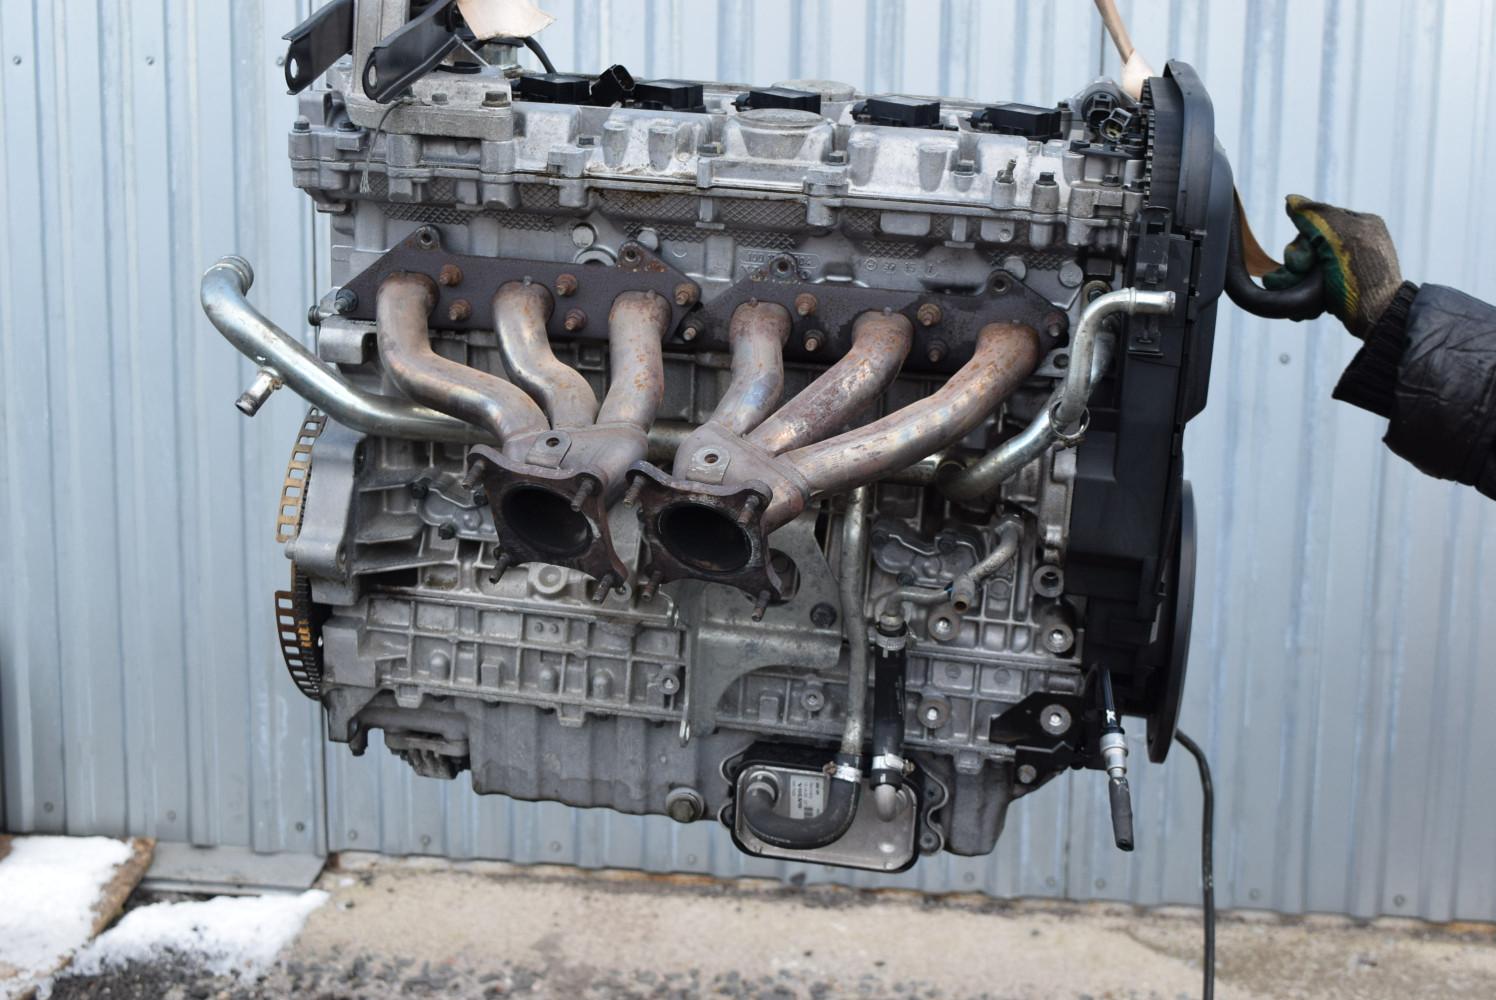 Купить мотор вольво. ДВС Volvo 2.9. Вольво s80 3.2 двигатель. Двигатель Вольво s80 2.9. Volvo s80 двигатель 2.9.